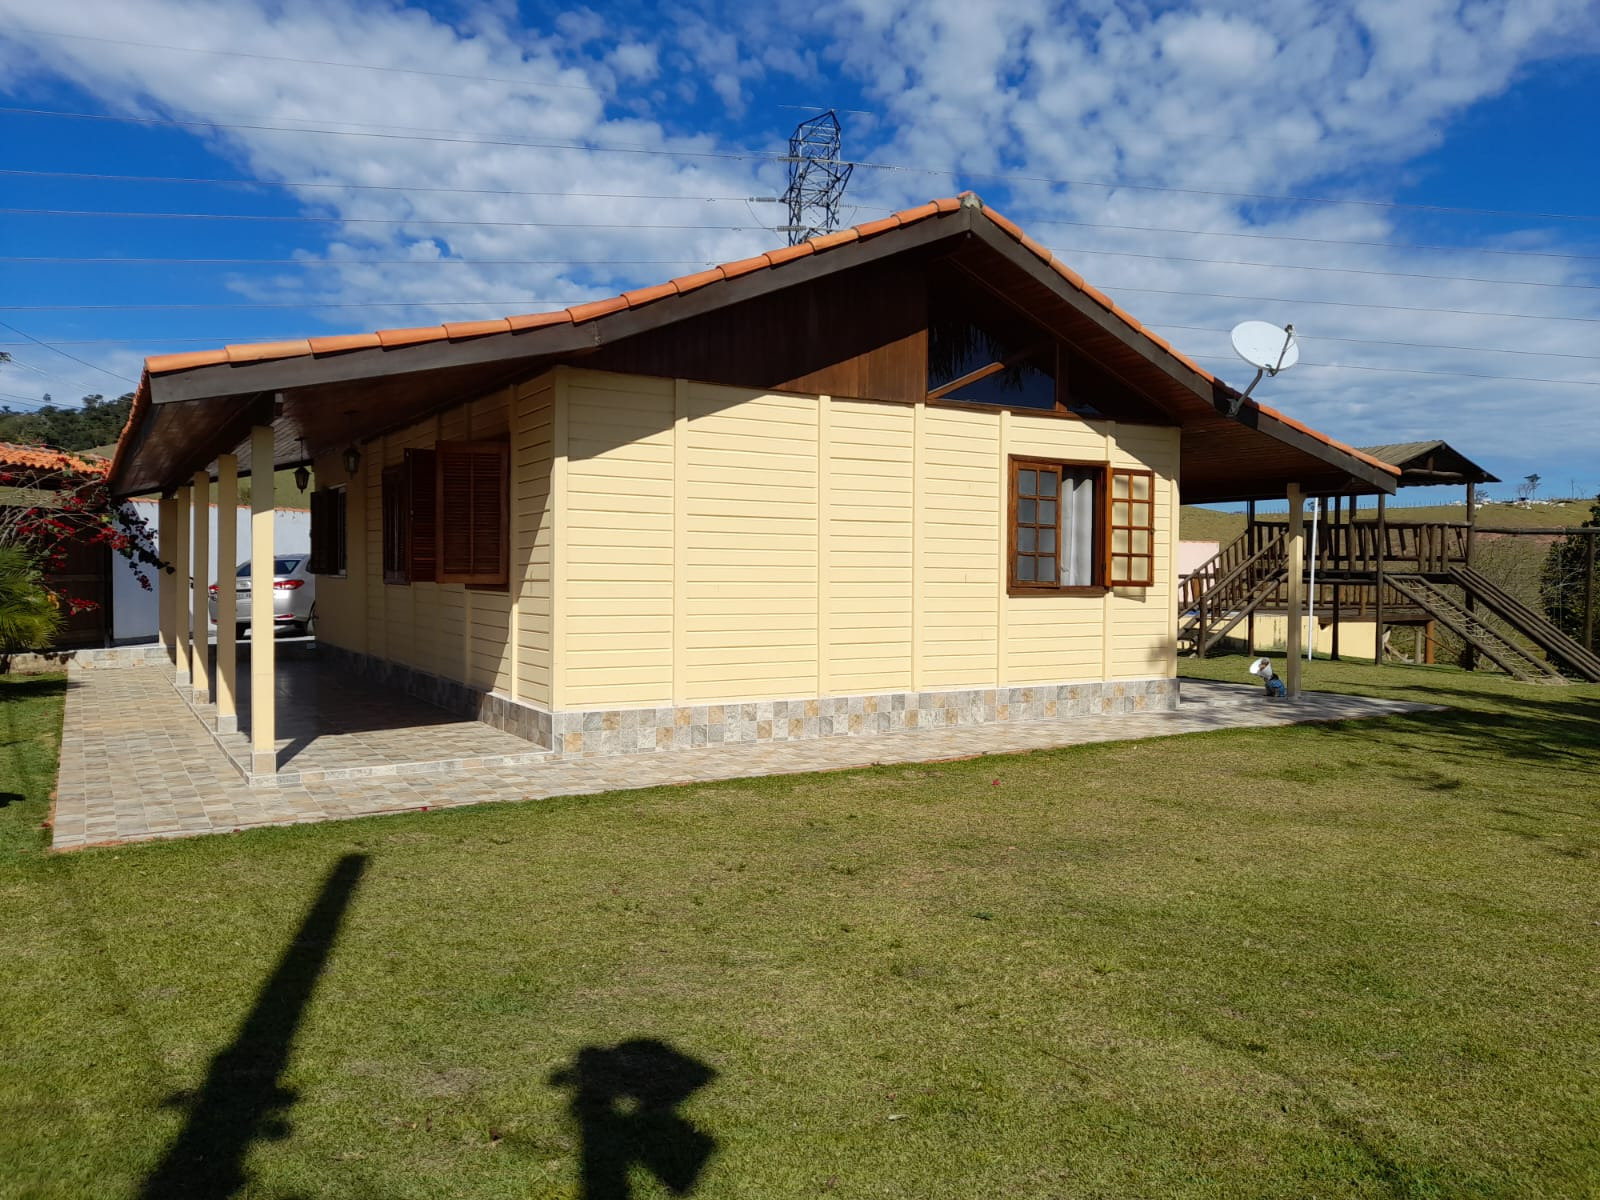 Chácara de 1.400 m² em Paraibuna, SP